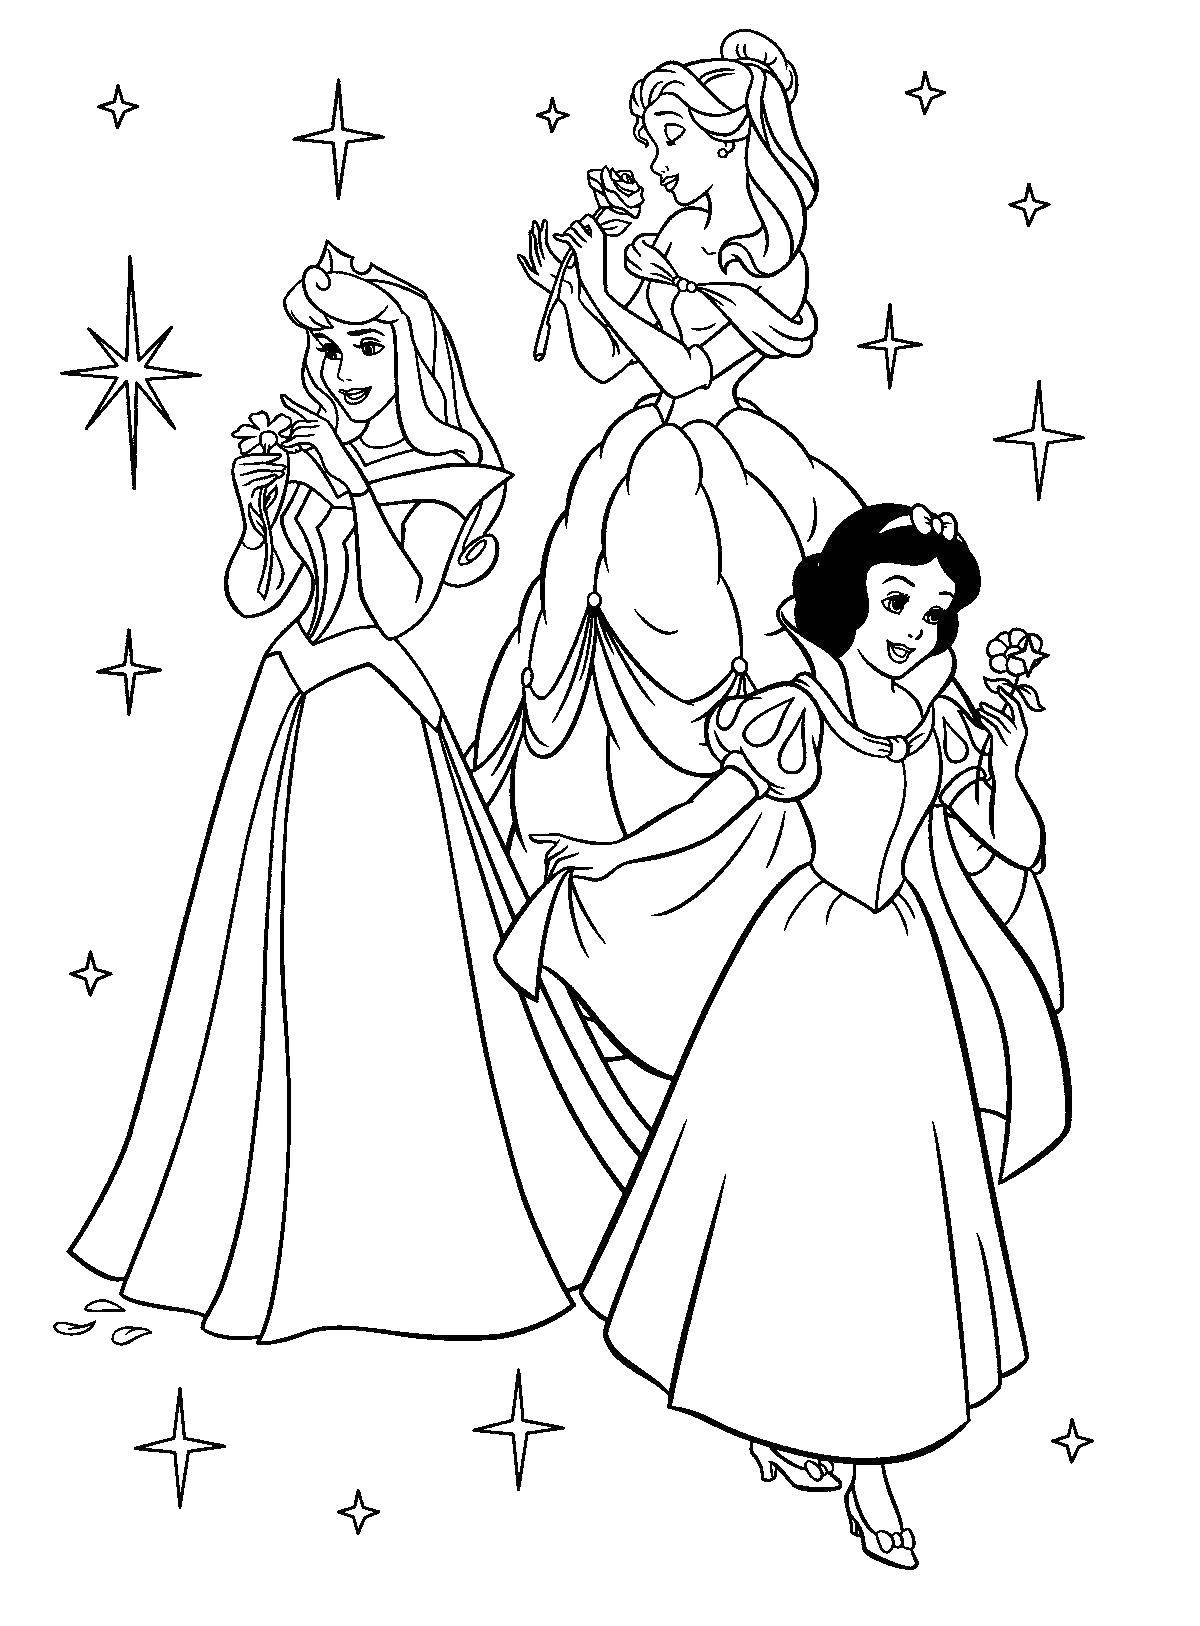 Опис: розмальовки  Принцеси діснея. Категорія: принцеса. Теги:  принцеси дісней.